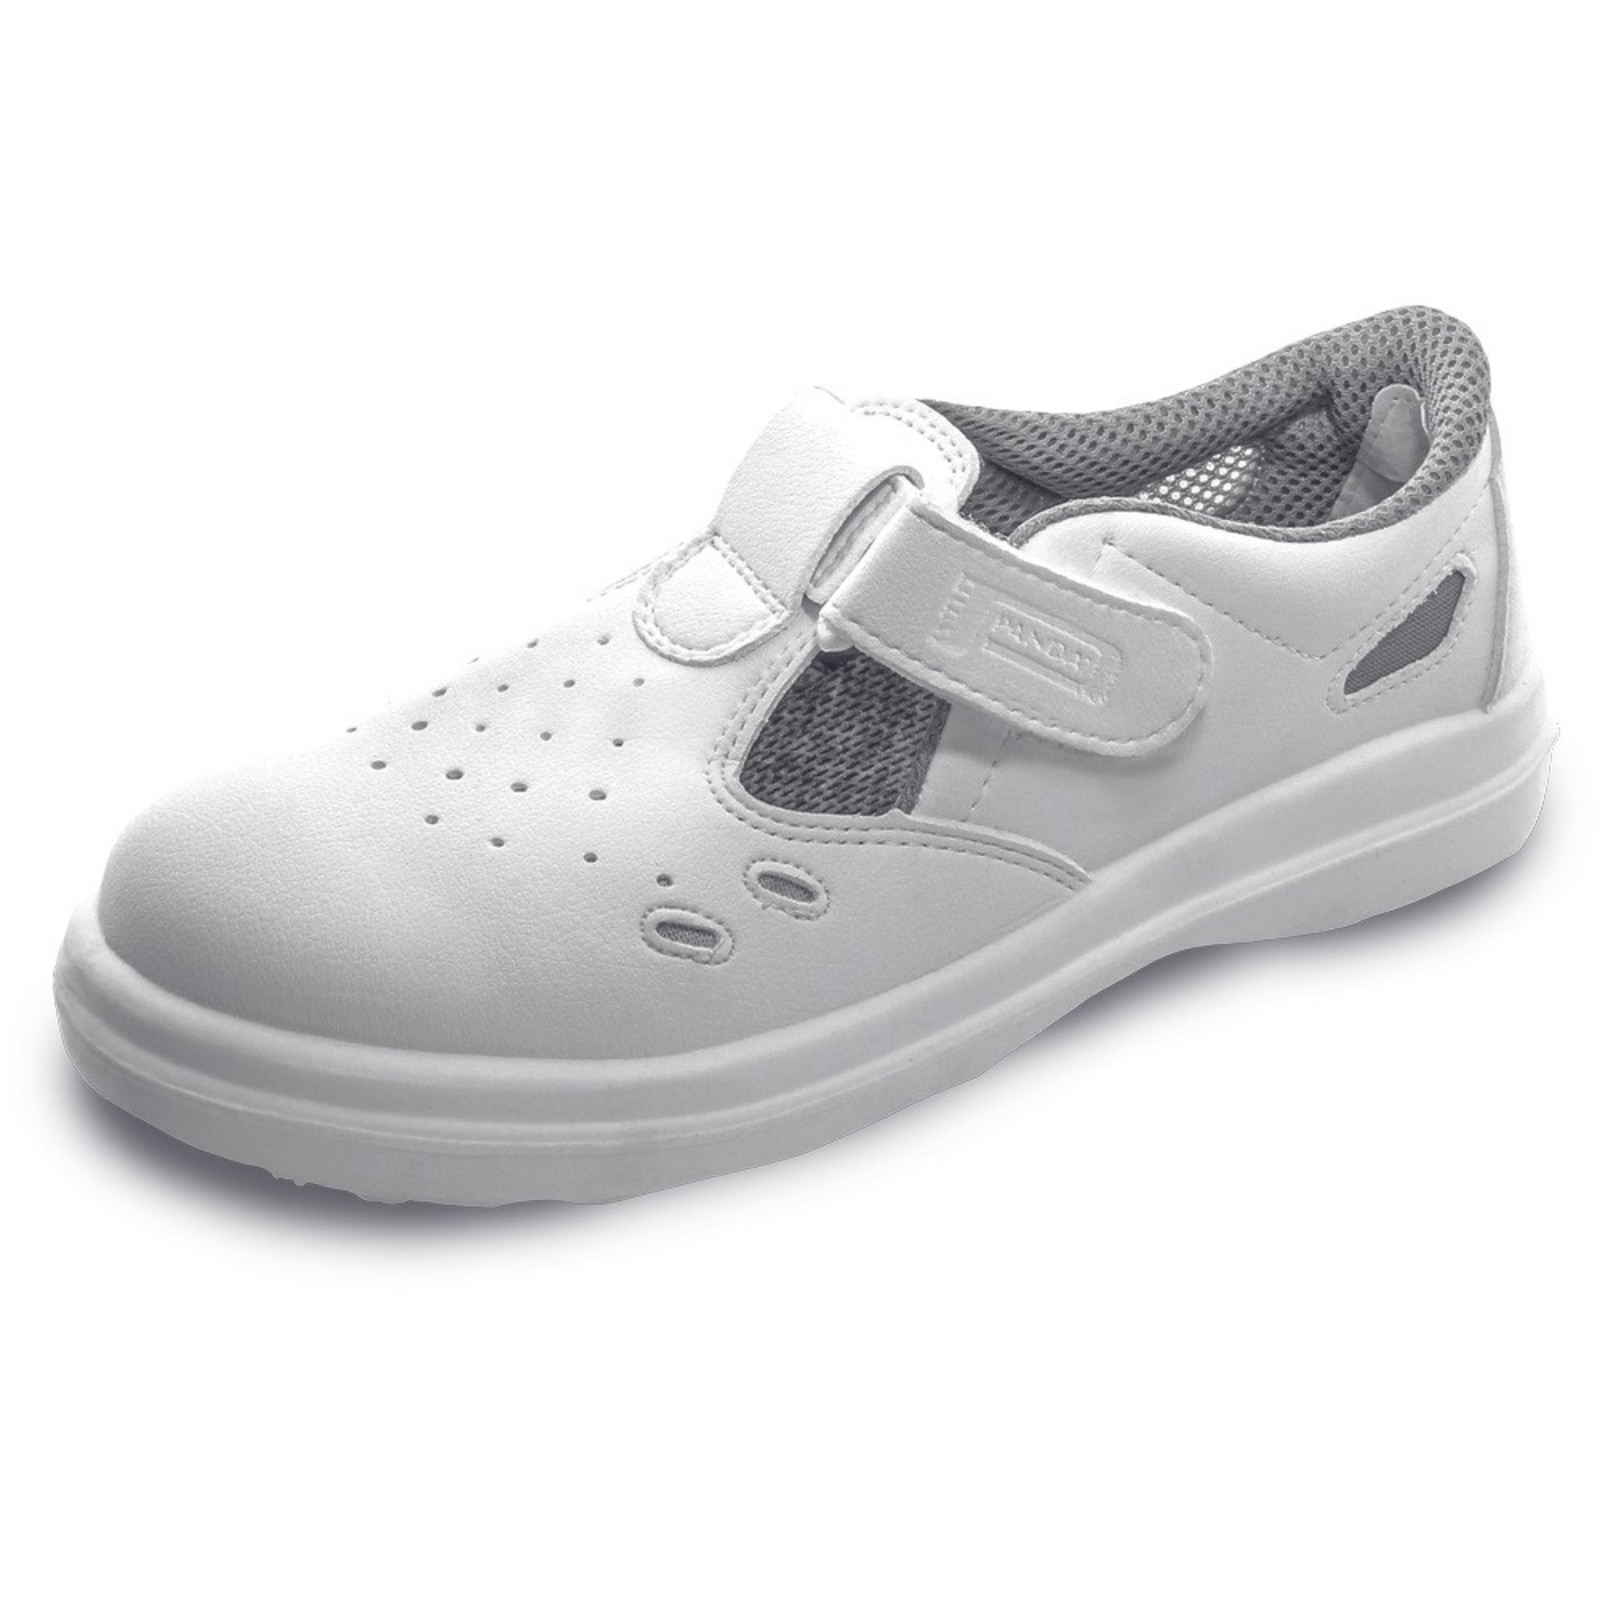 Bezpečnostné sandále Panda Sanitary Lybra S1 SRC - veľkosť: 47, farba: biela